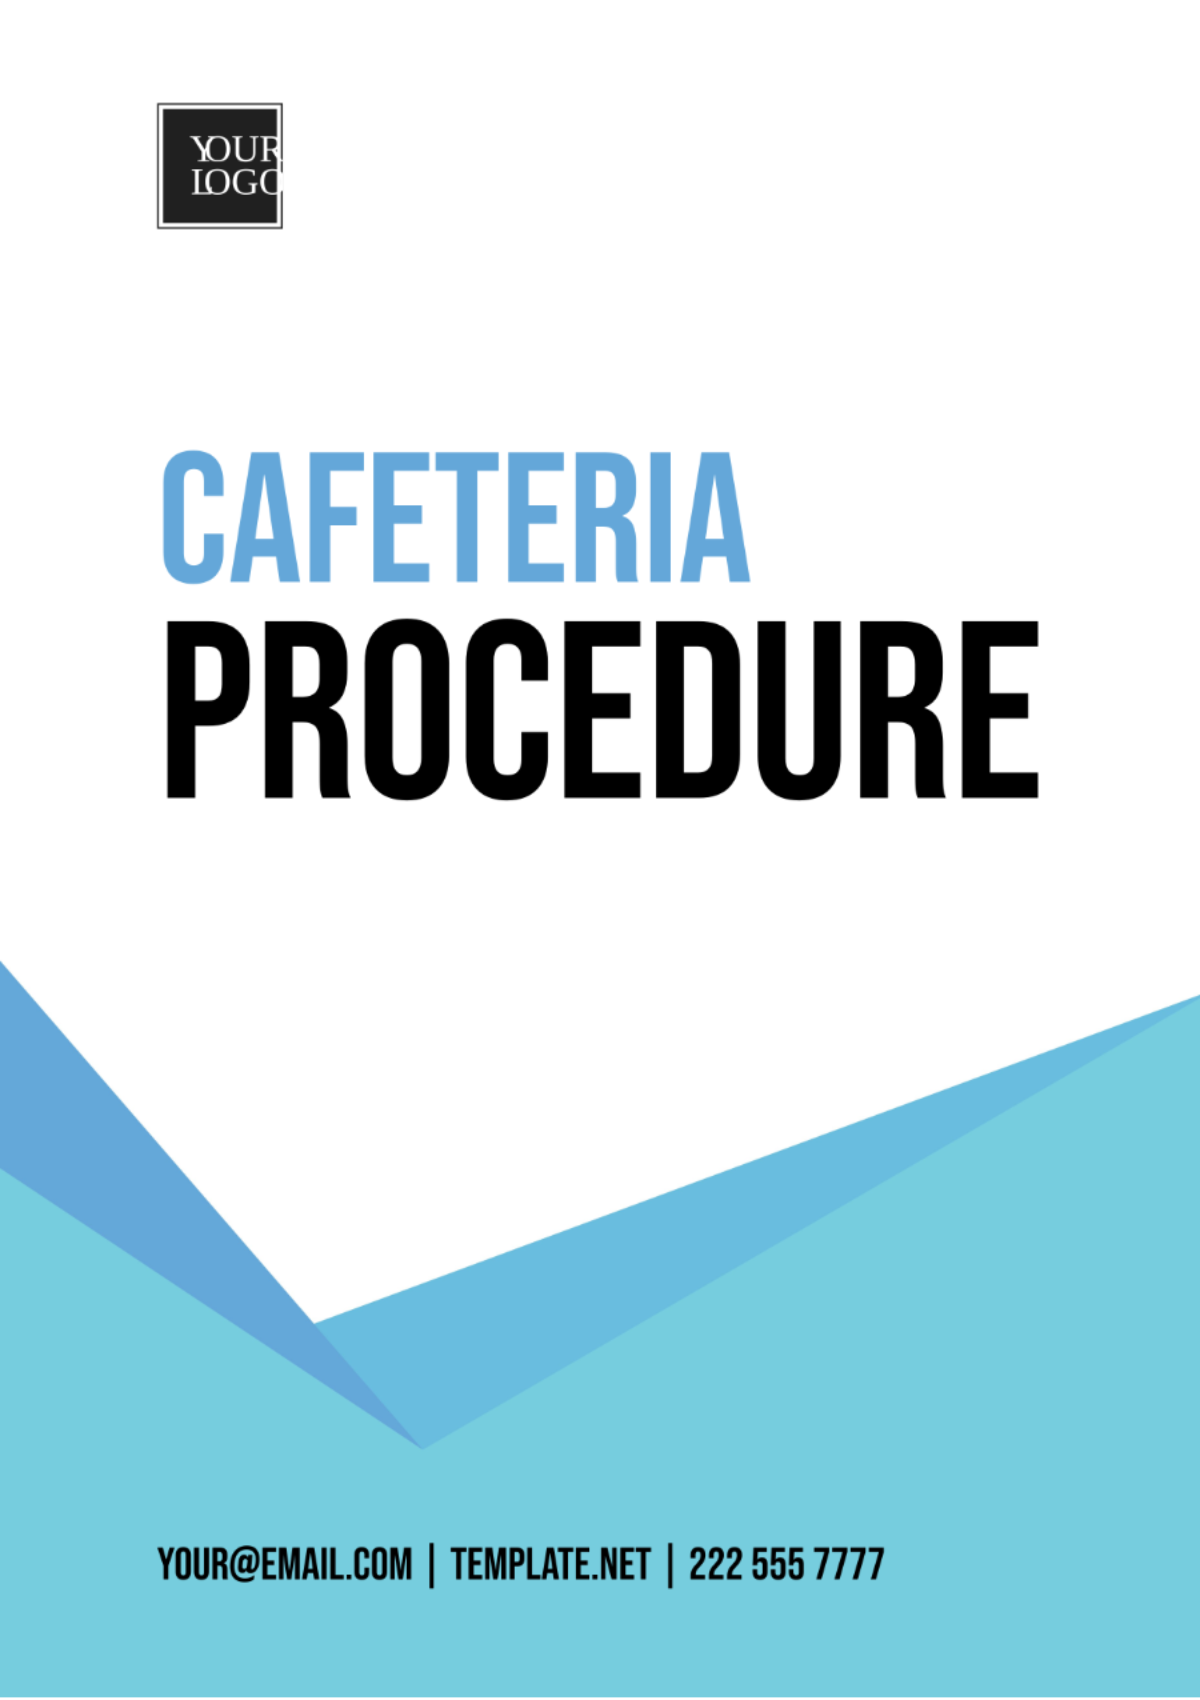 Free Cafeteria Procedure Template